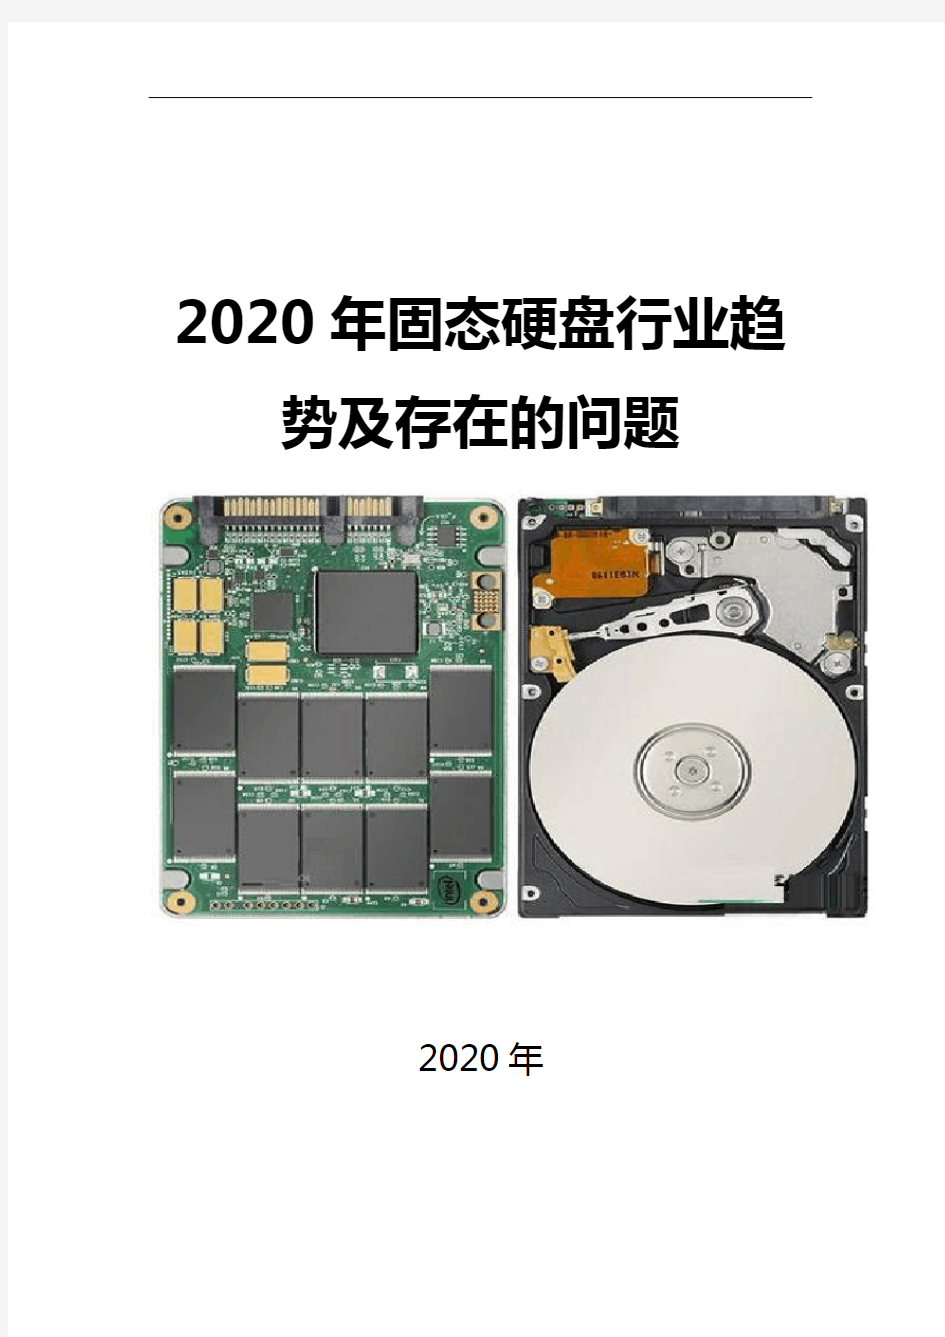 2020固态硬盘行业趋势及存在的问题